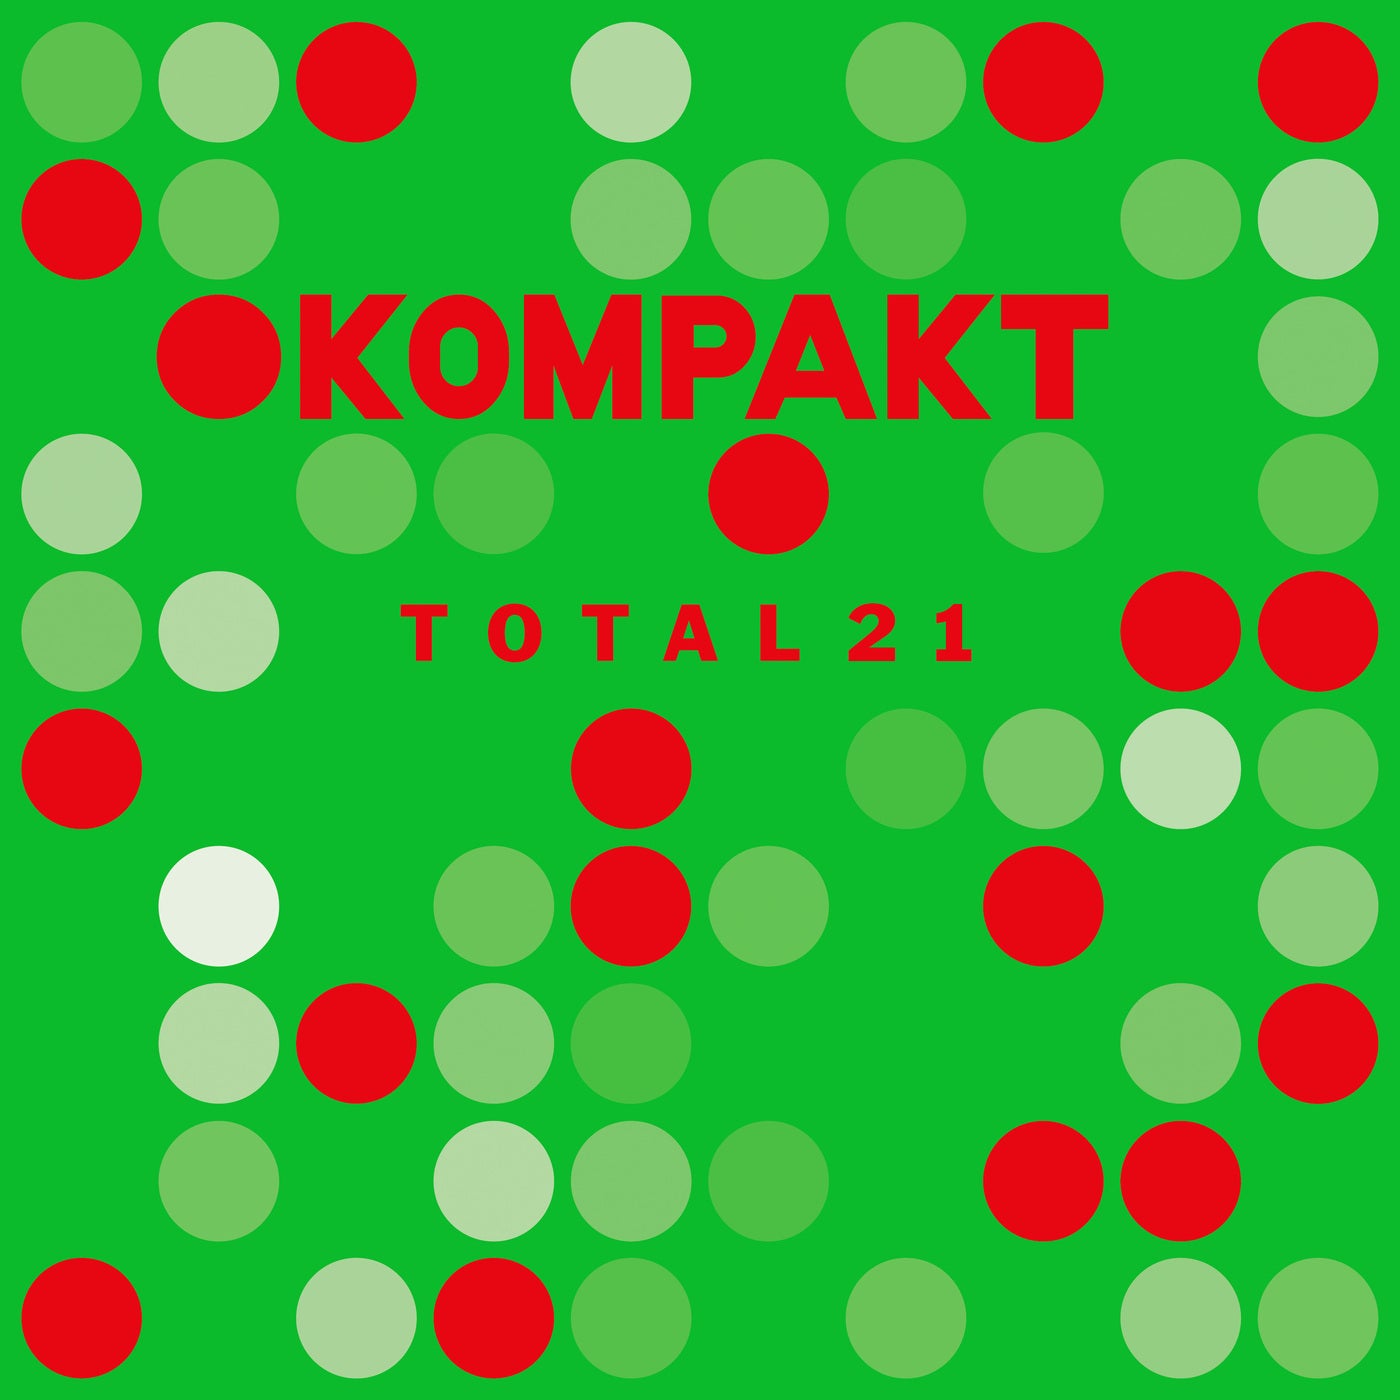 Download Kompakt: Total 21 on Electrobuzz